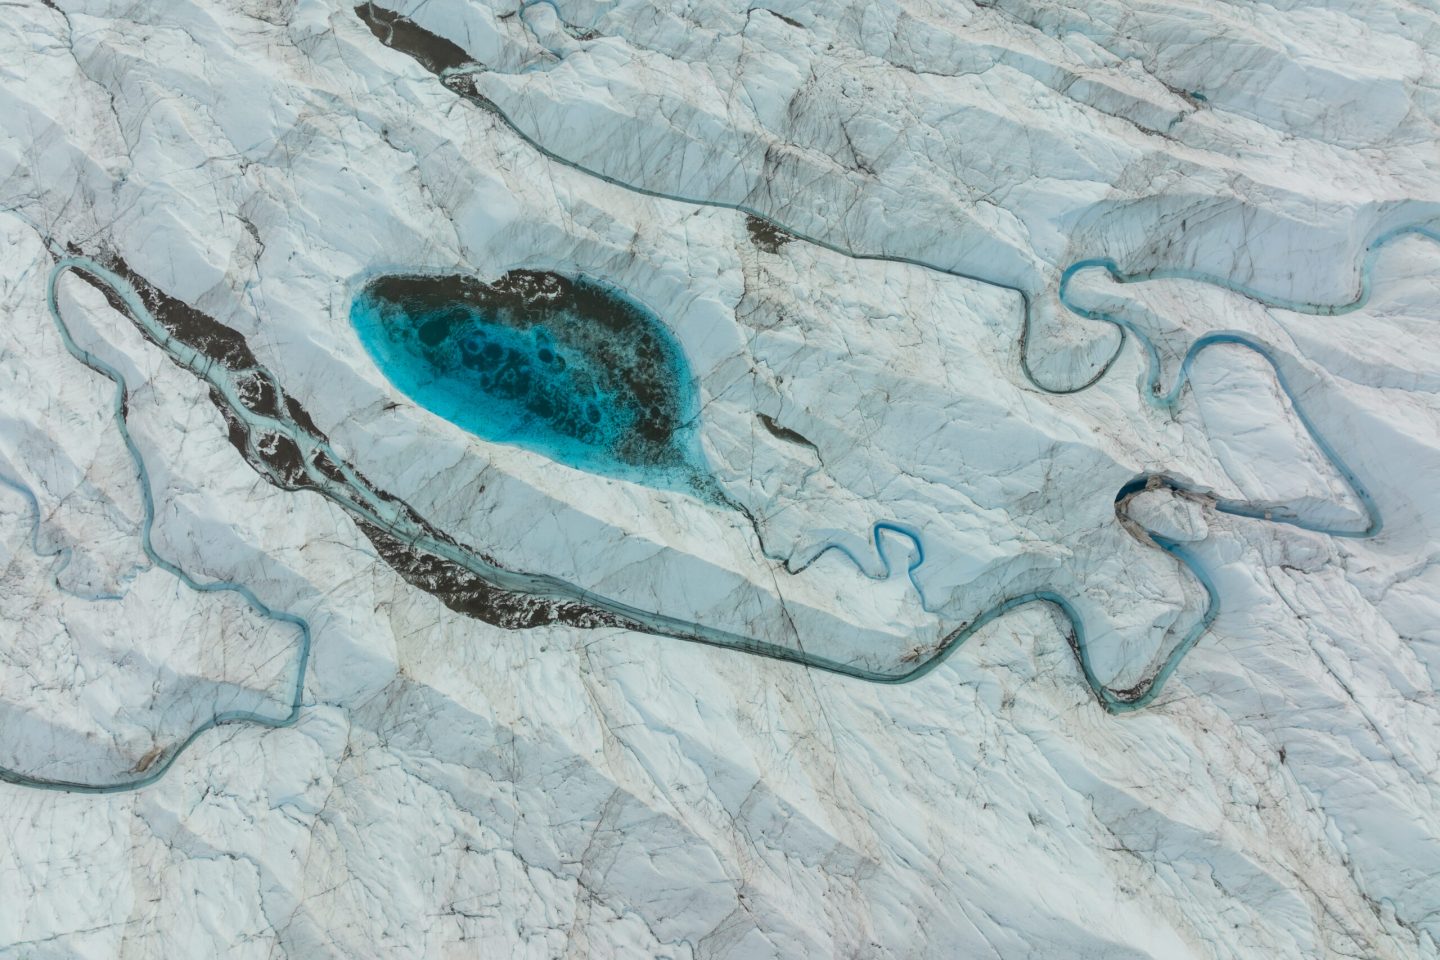 الاحتباس الحراري وآثاره وصلا إلى وسط غرينلاند، والباحثون يتساءلون عن النتائج